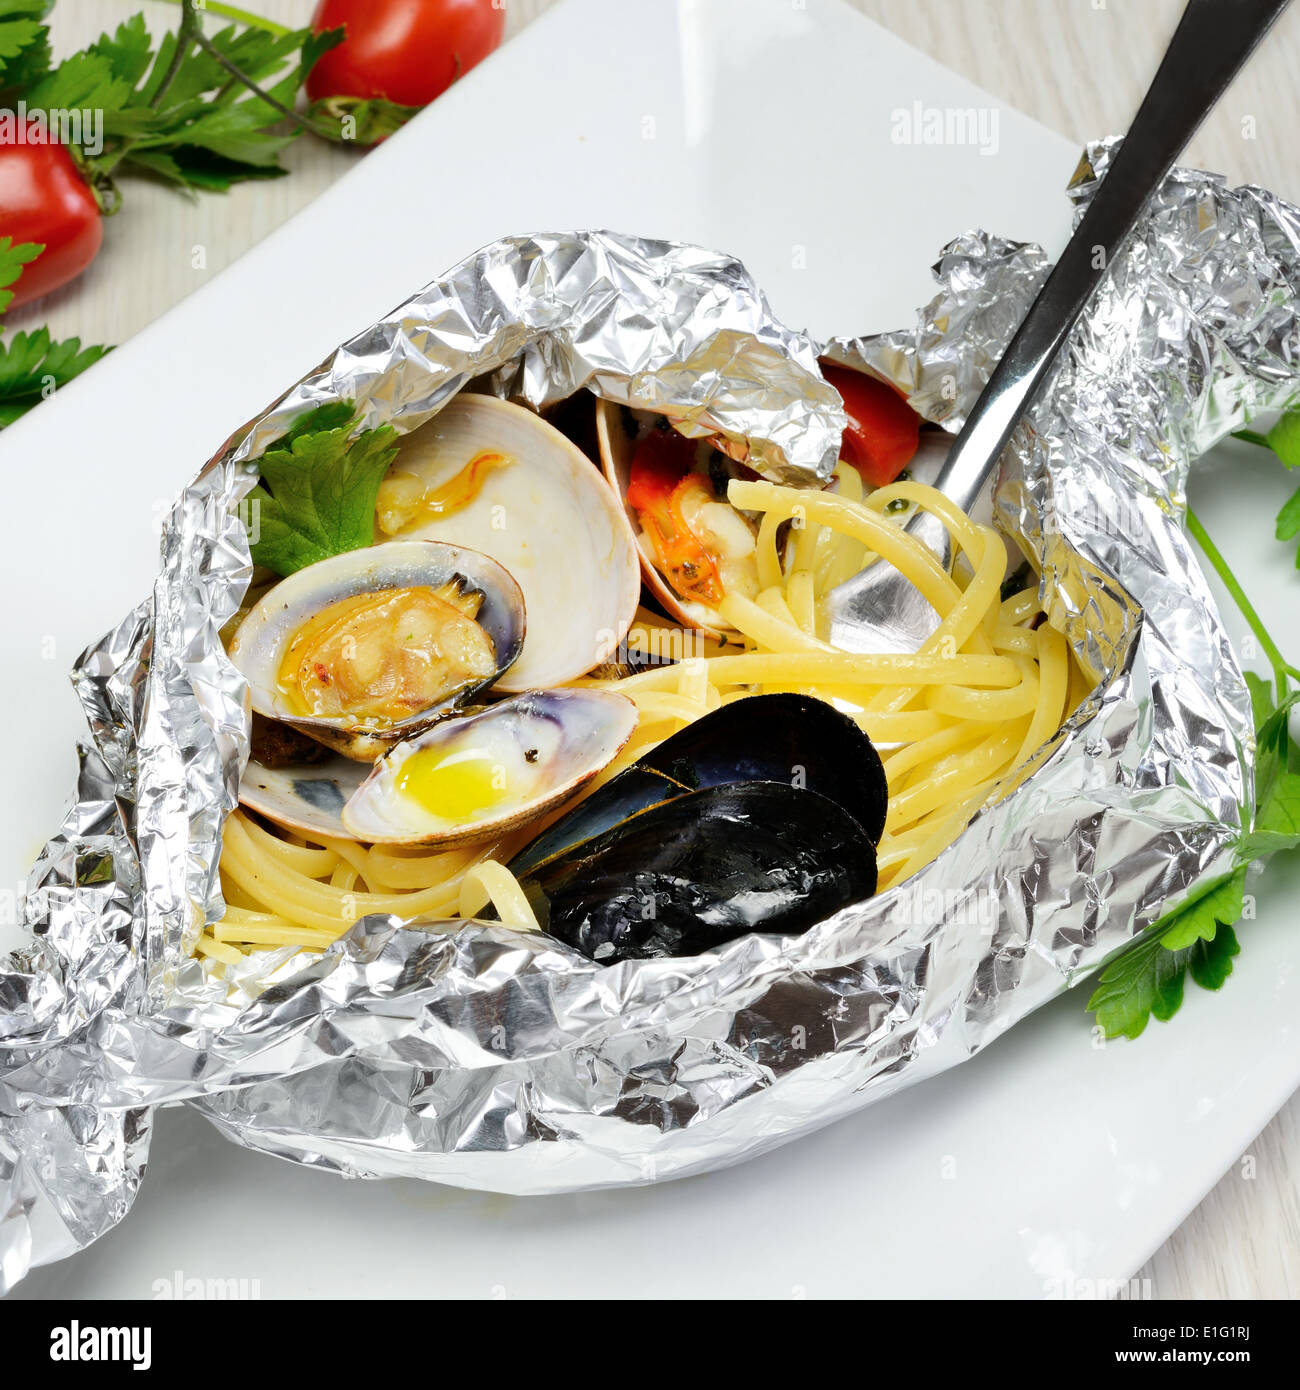 Cuisine traditionnelle italienne composée de pâtes et de fruits de mer spaghetti fasolari,palourdes et moules, cuites au four dans de l'aluminium Banque D'Images